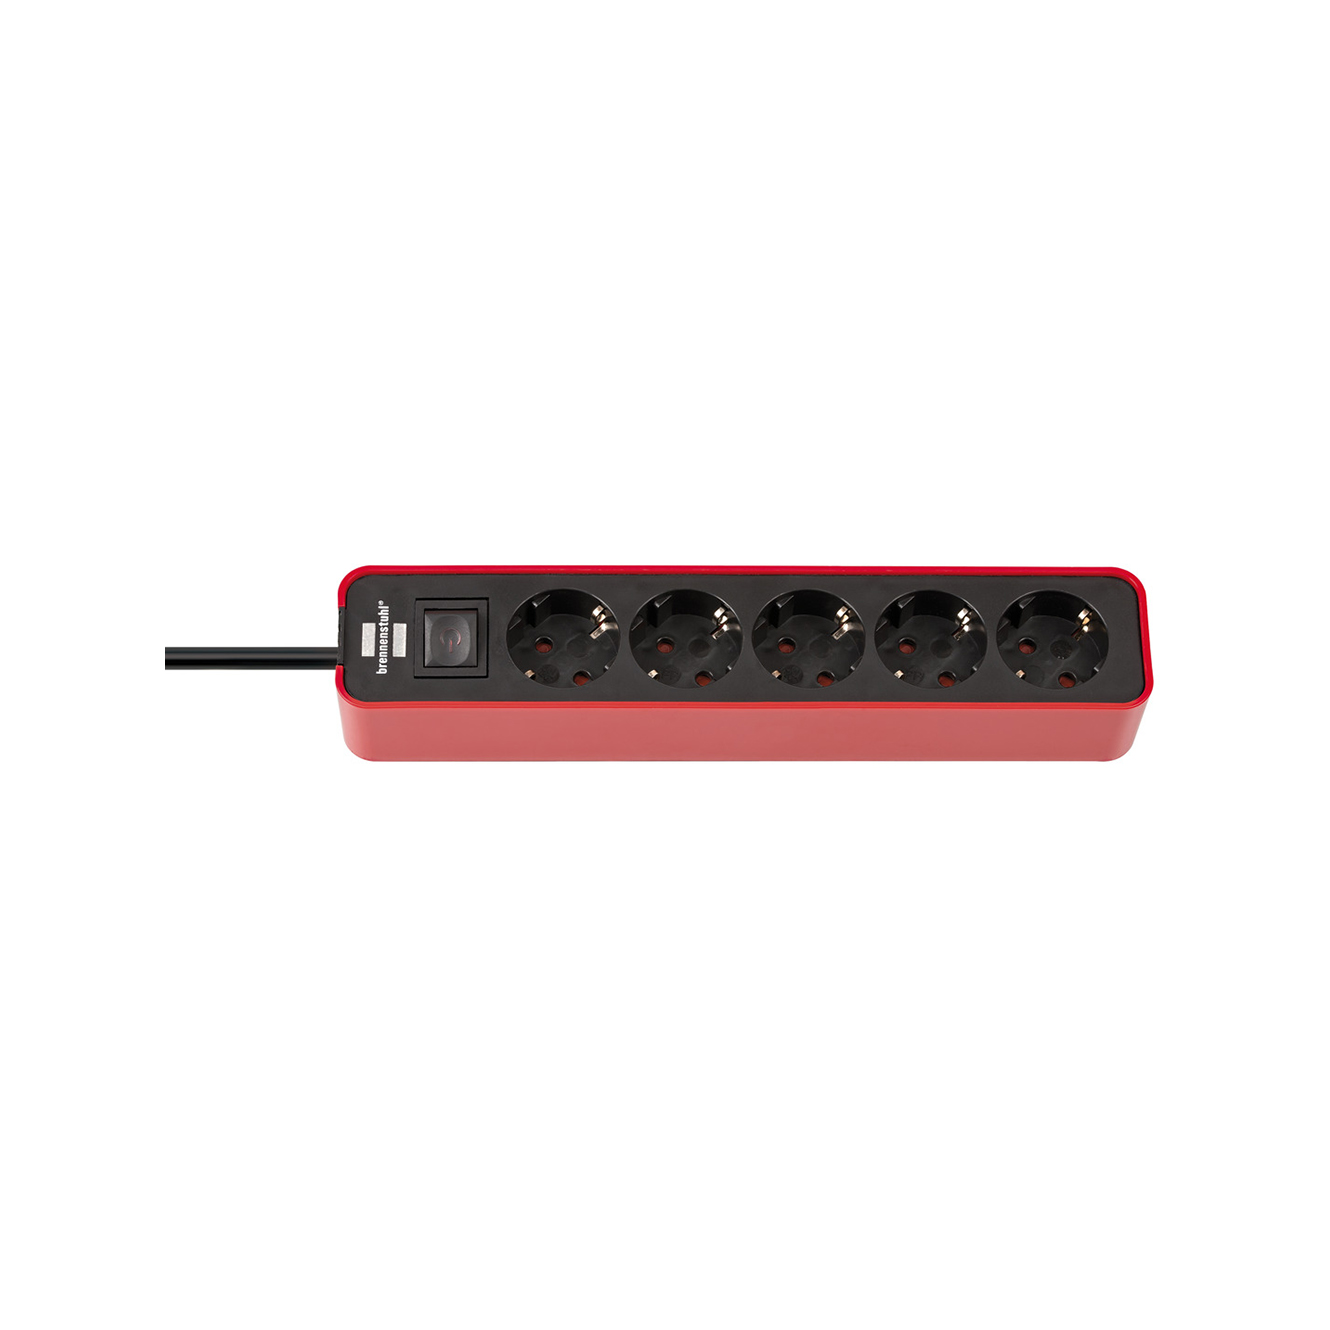 Удлинитель Brennenstuhl Ecolor с переключателем 5 розеток кабель 1,5 м H05VV-F 3G1,5 черно-красный 1153250070